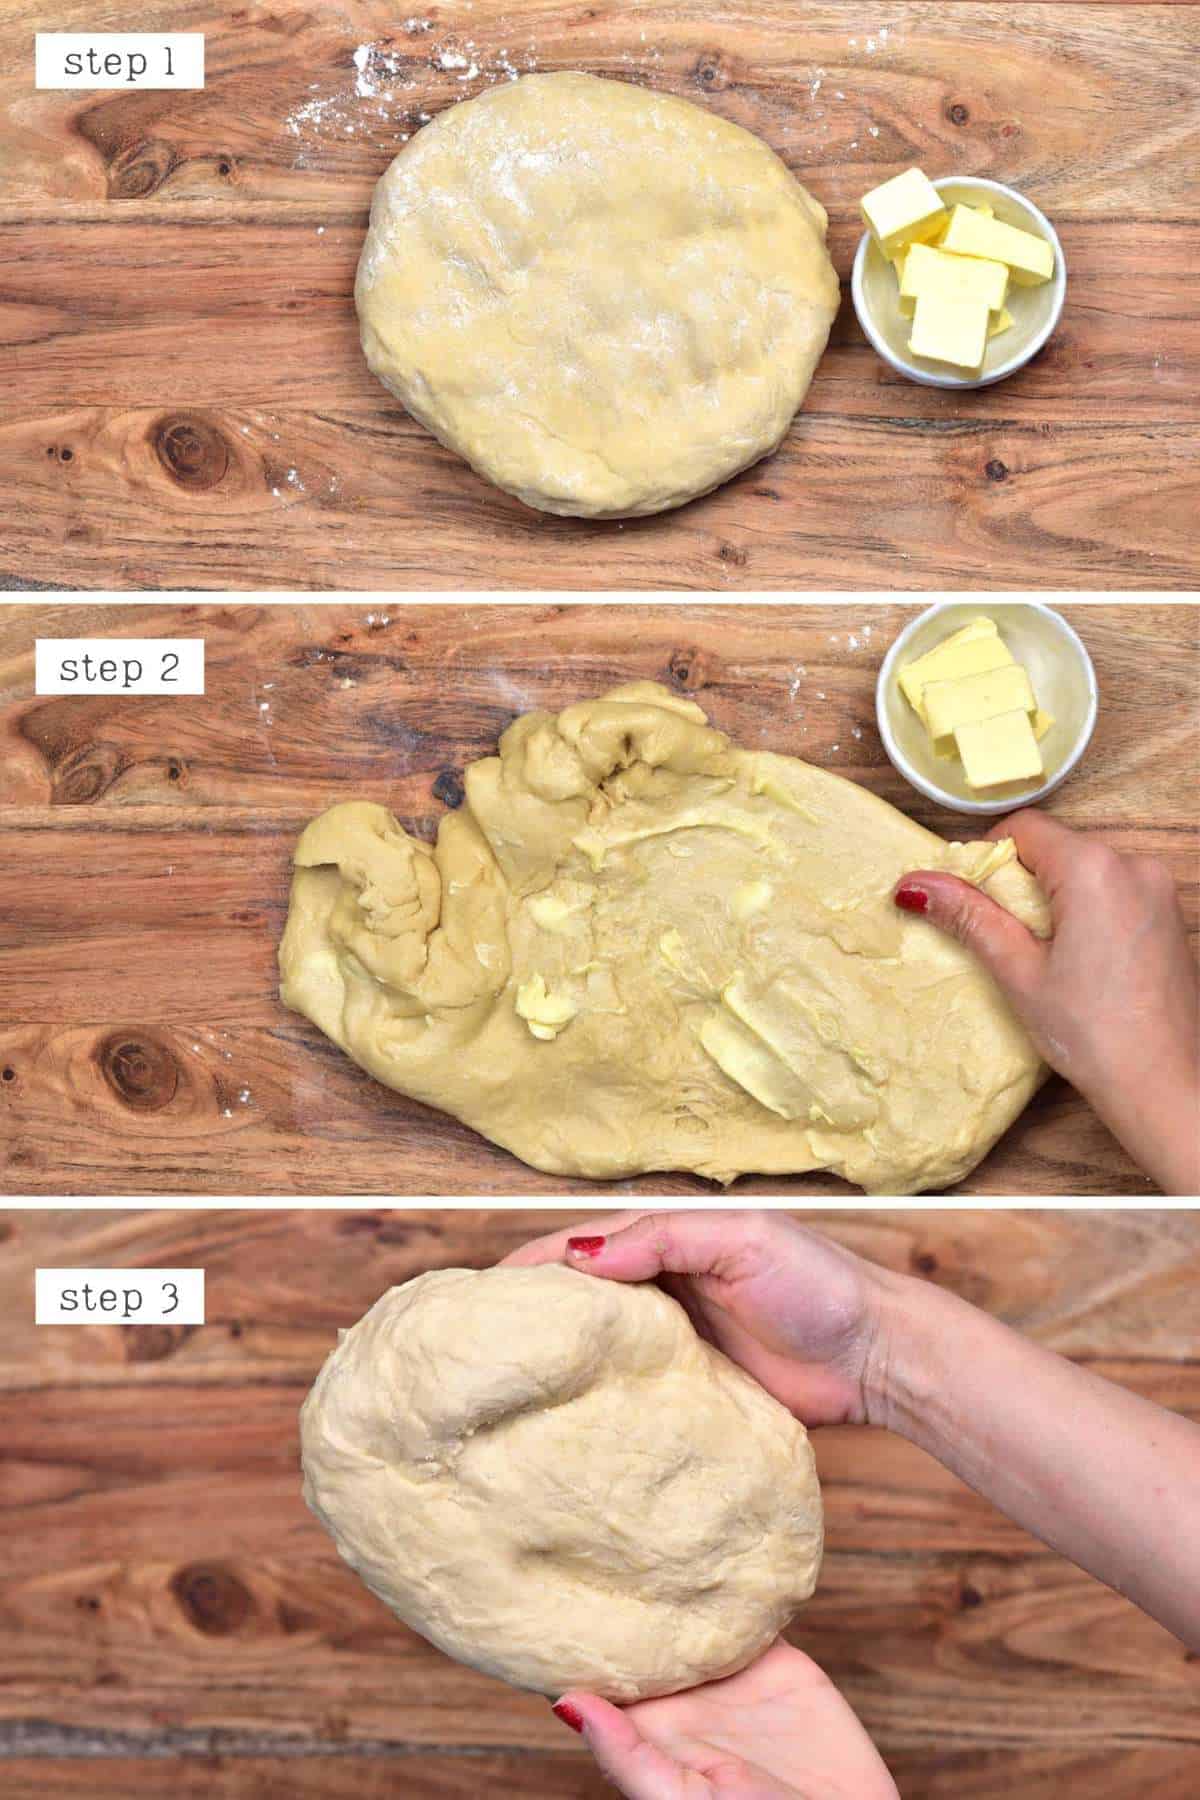 Kneading butter into buns dough